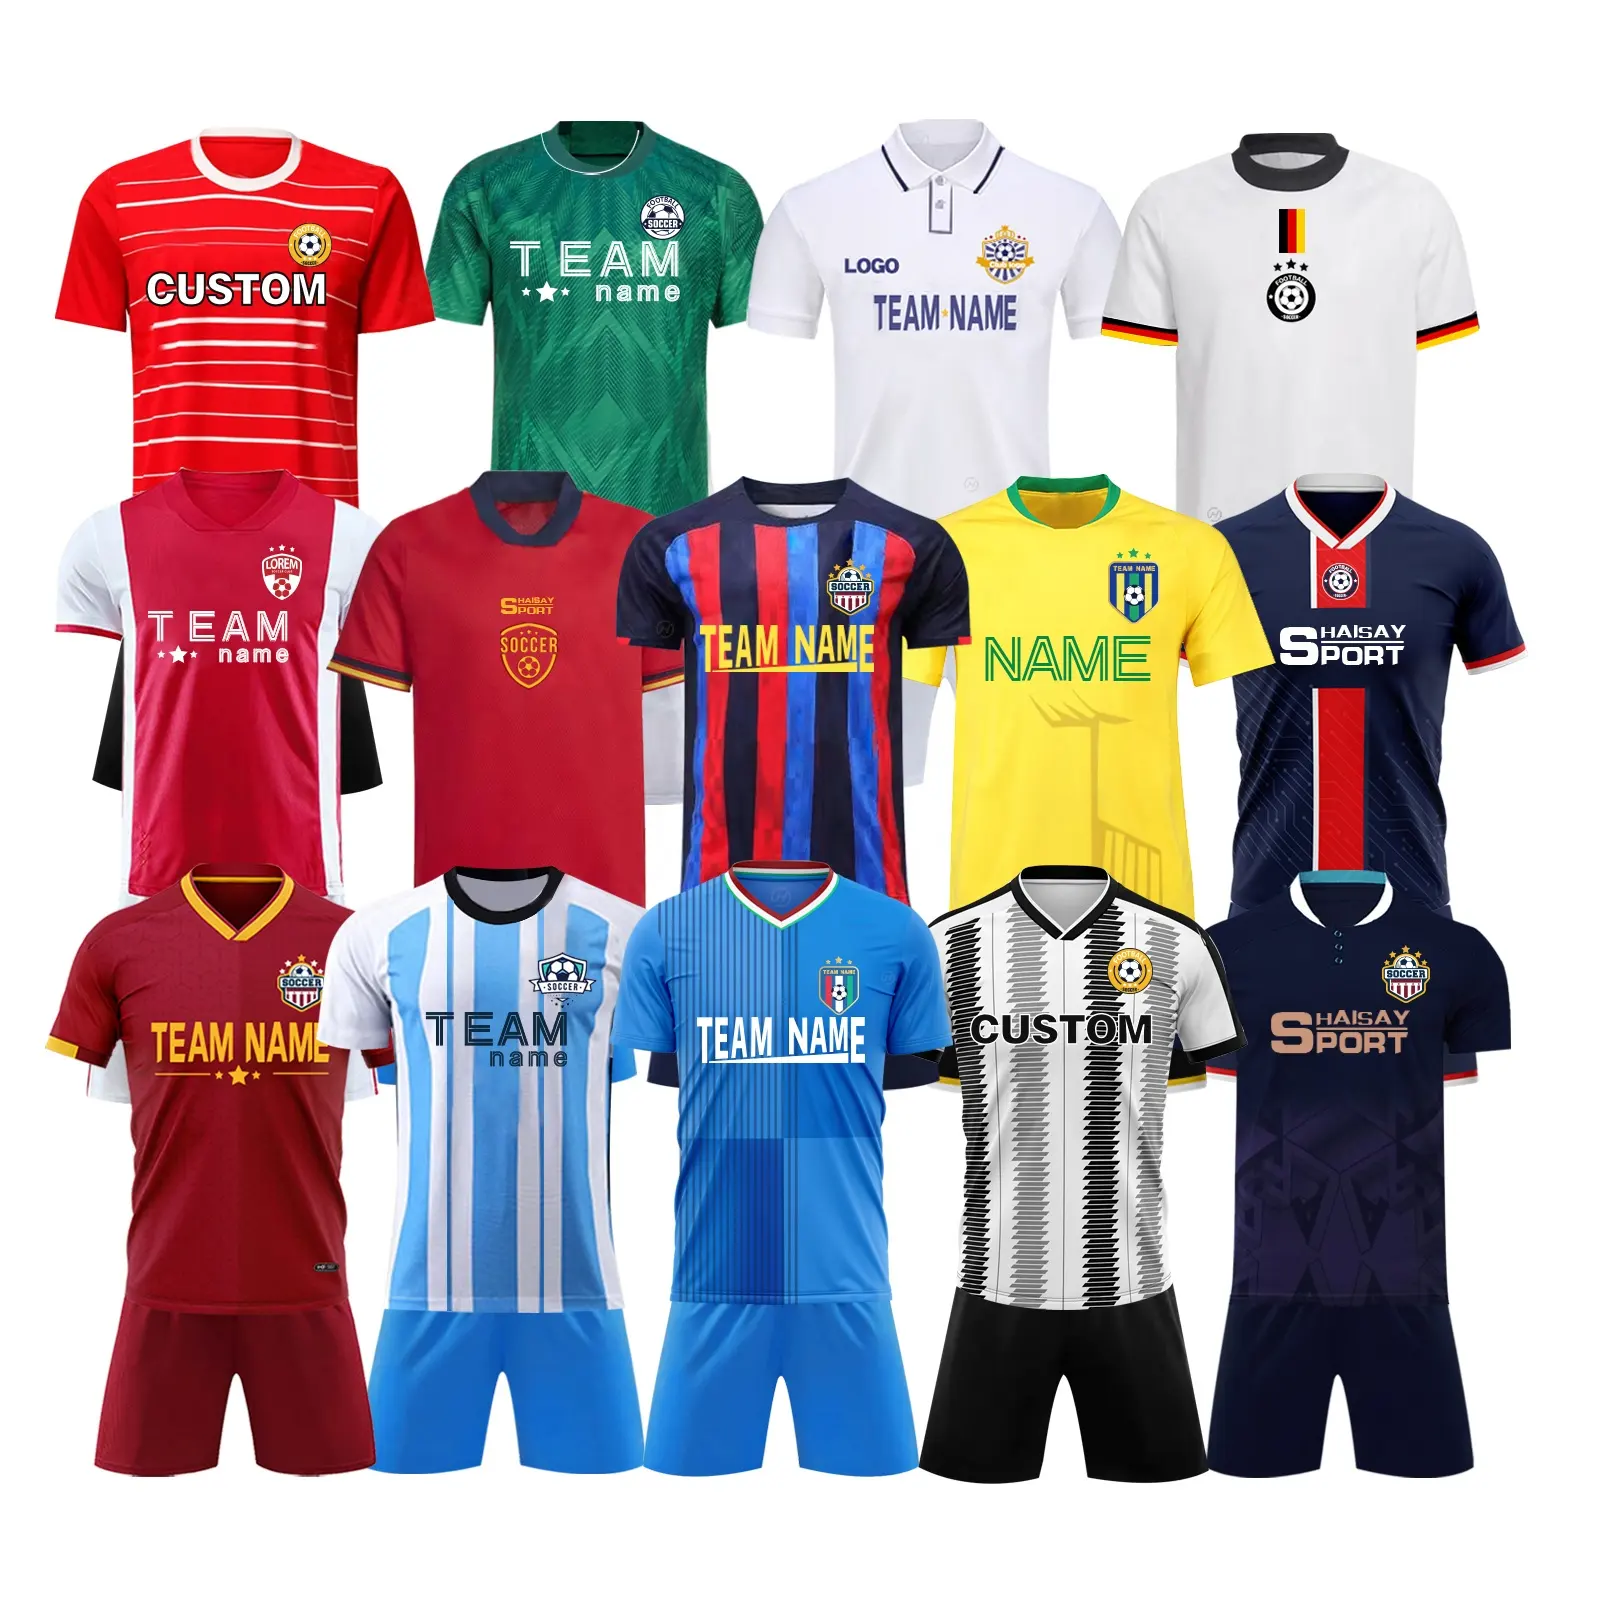 Maglia da calcio della coppa del mondo 2022 Quick Dry poliestere abbigliamento sportivo uomo abbigliamento da calcio Set uniformi maglie da calcio personalizzate